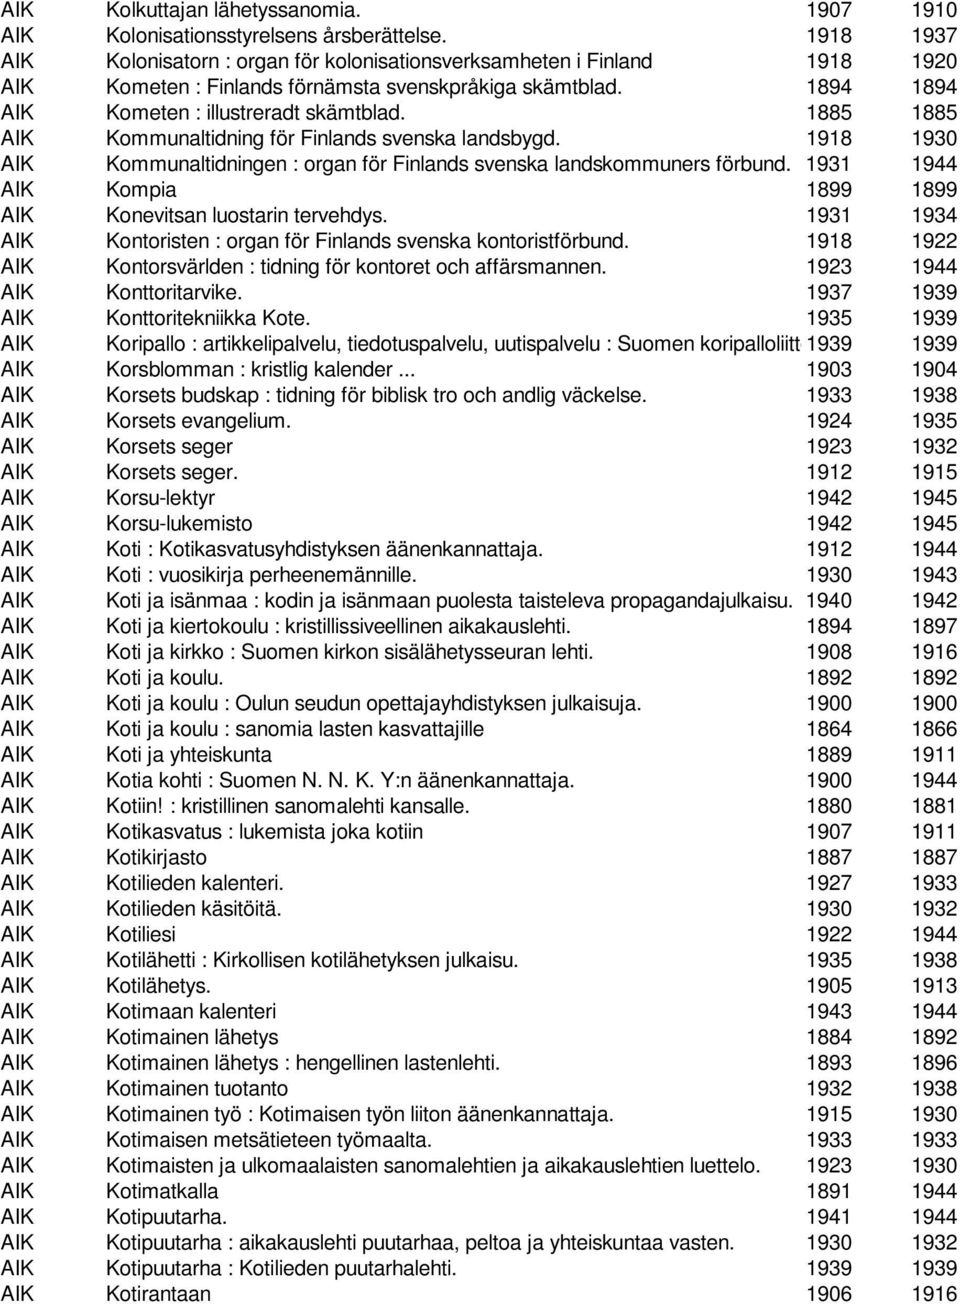 1885 1885 AIK Kommunaltidning för Finlands svenska landsbygd. 1918 1930 AIK Kommunaltidningen : organ för Finlands svenska landskommuners förbund.